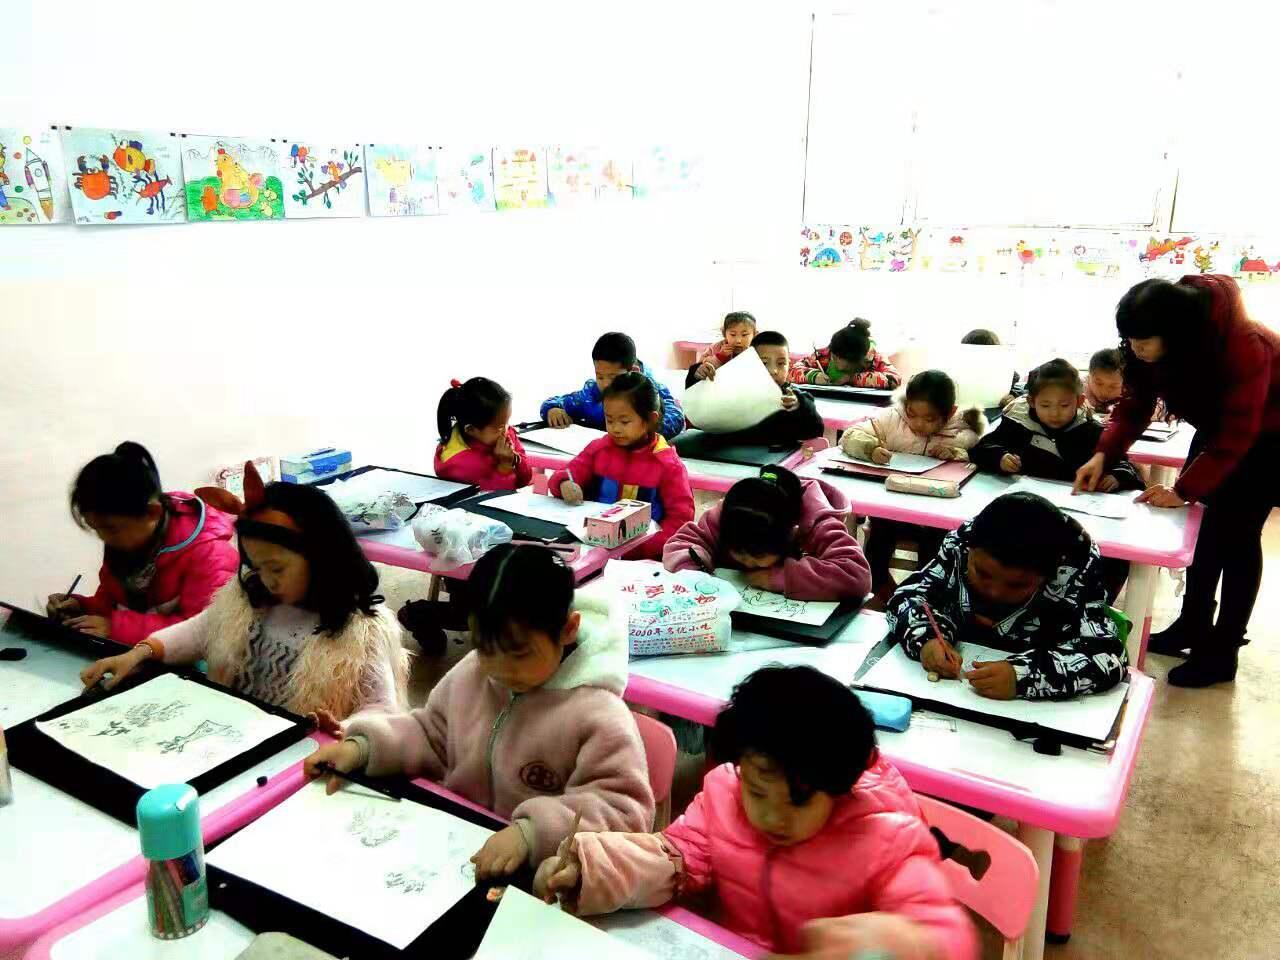 老师正在给圆梦画室一部幼小班的学生辅导作业